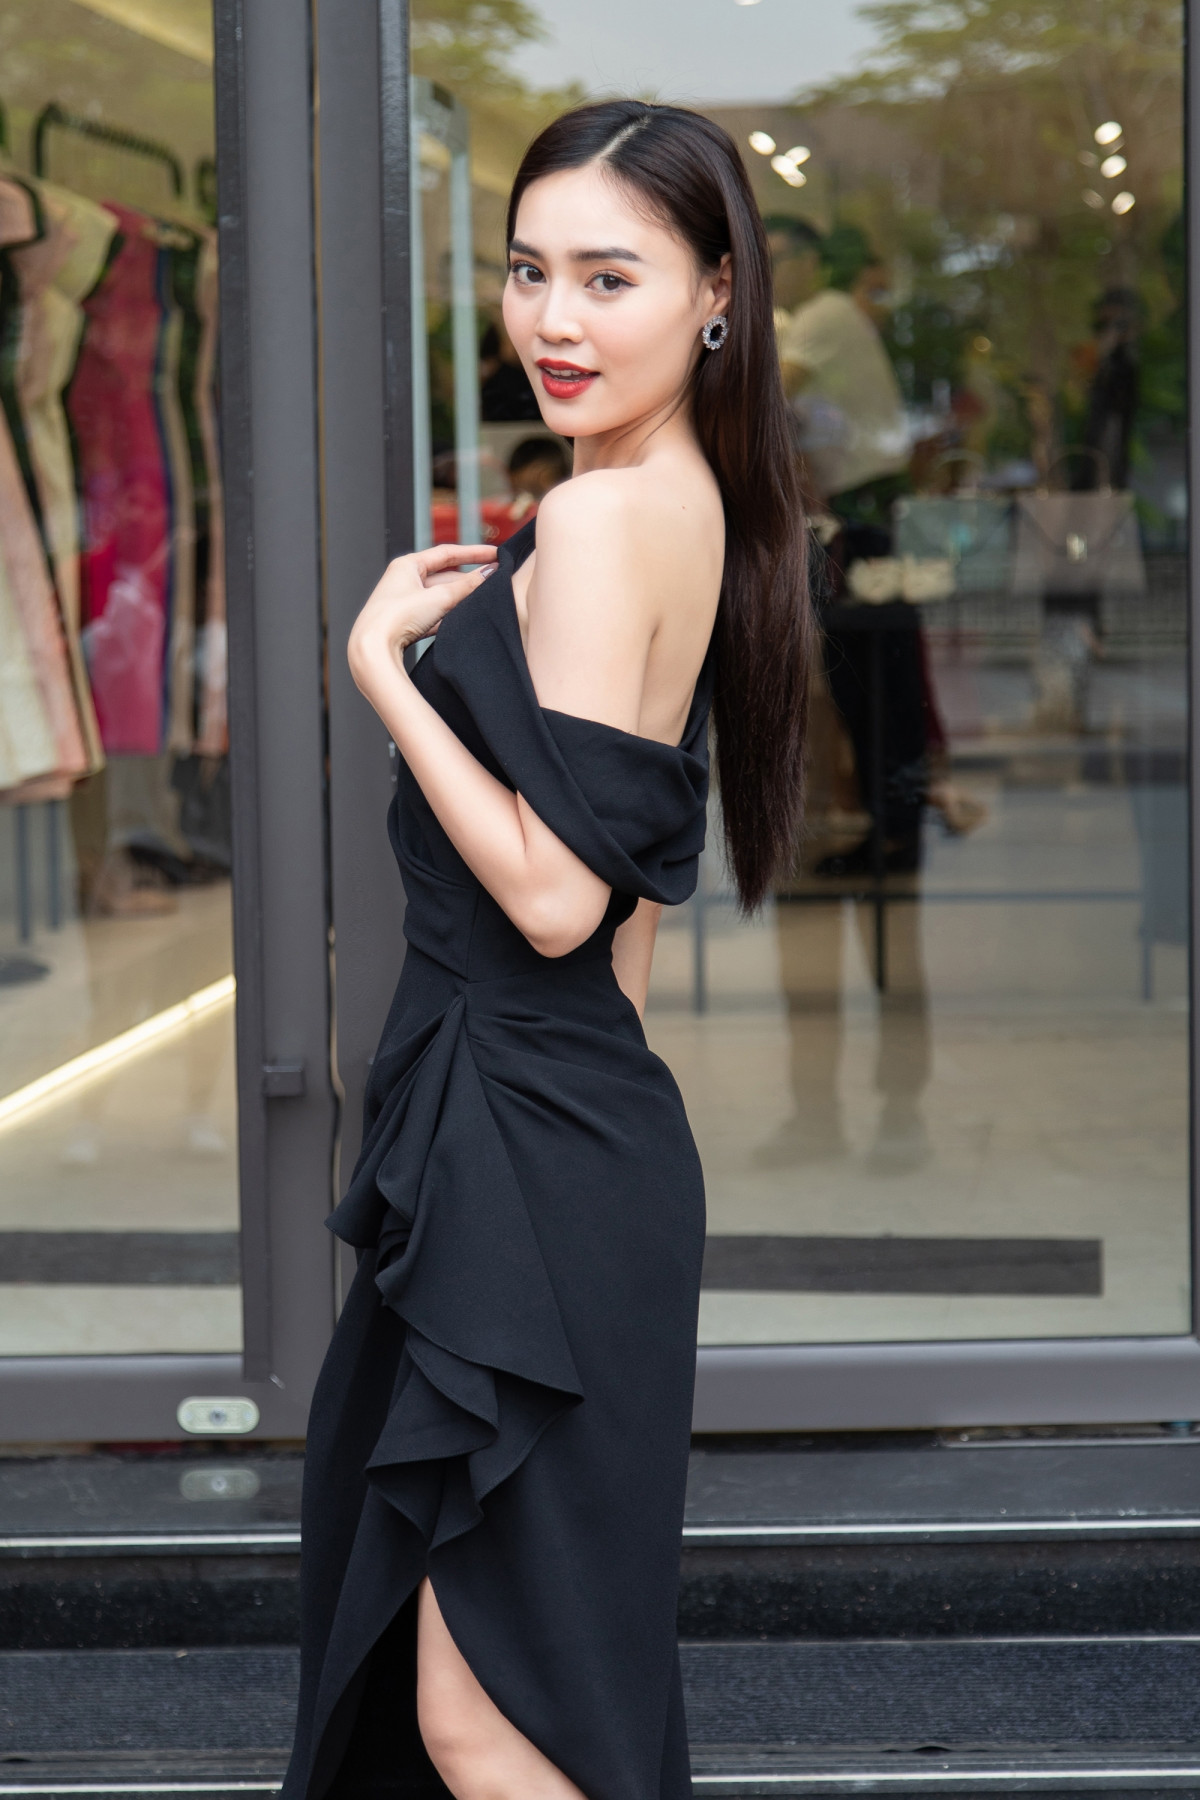 Nữ diễn viên diện chiếc váy màu đen với những đường gấp nếp độc đáo để tạo nên phom dáng bất đối xứng của trang phục. Đó cũng là thế mạnh, màu sắc riêng của NTK Đỗ Mạnh Cường.